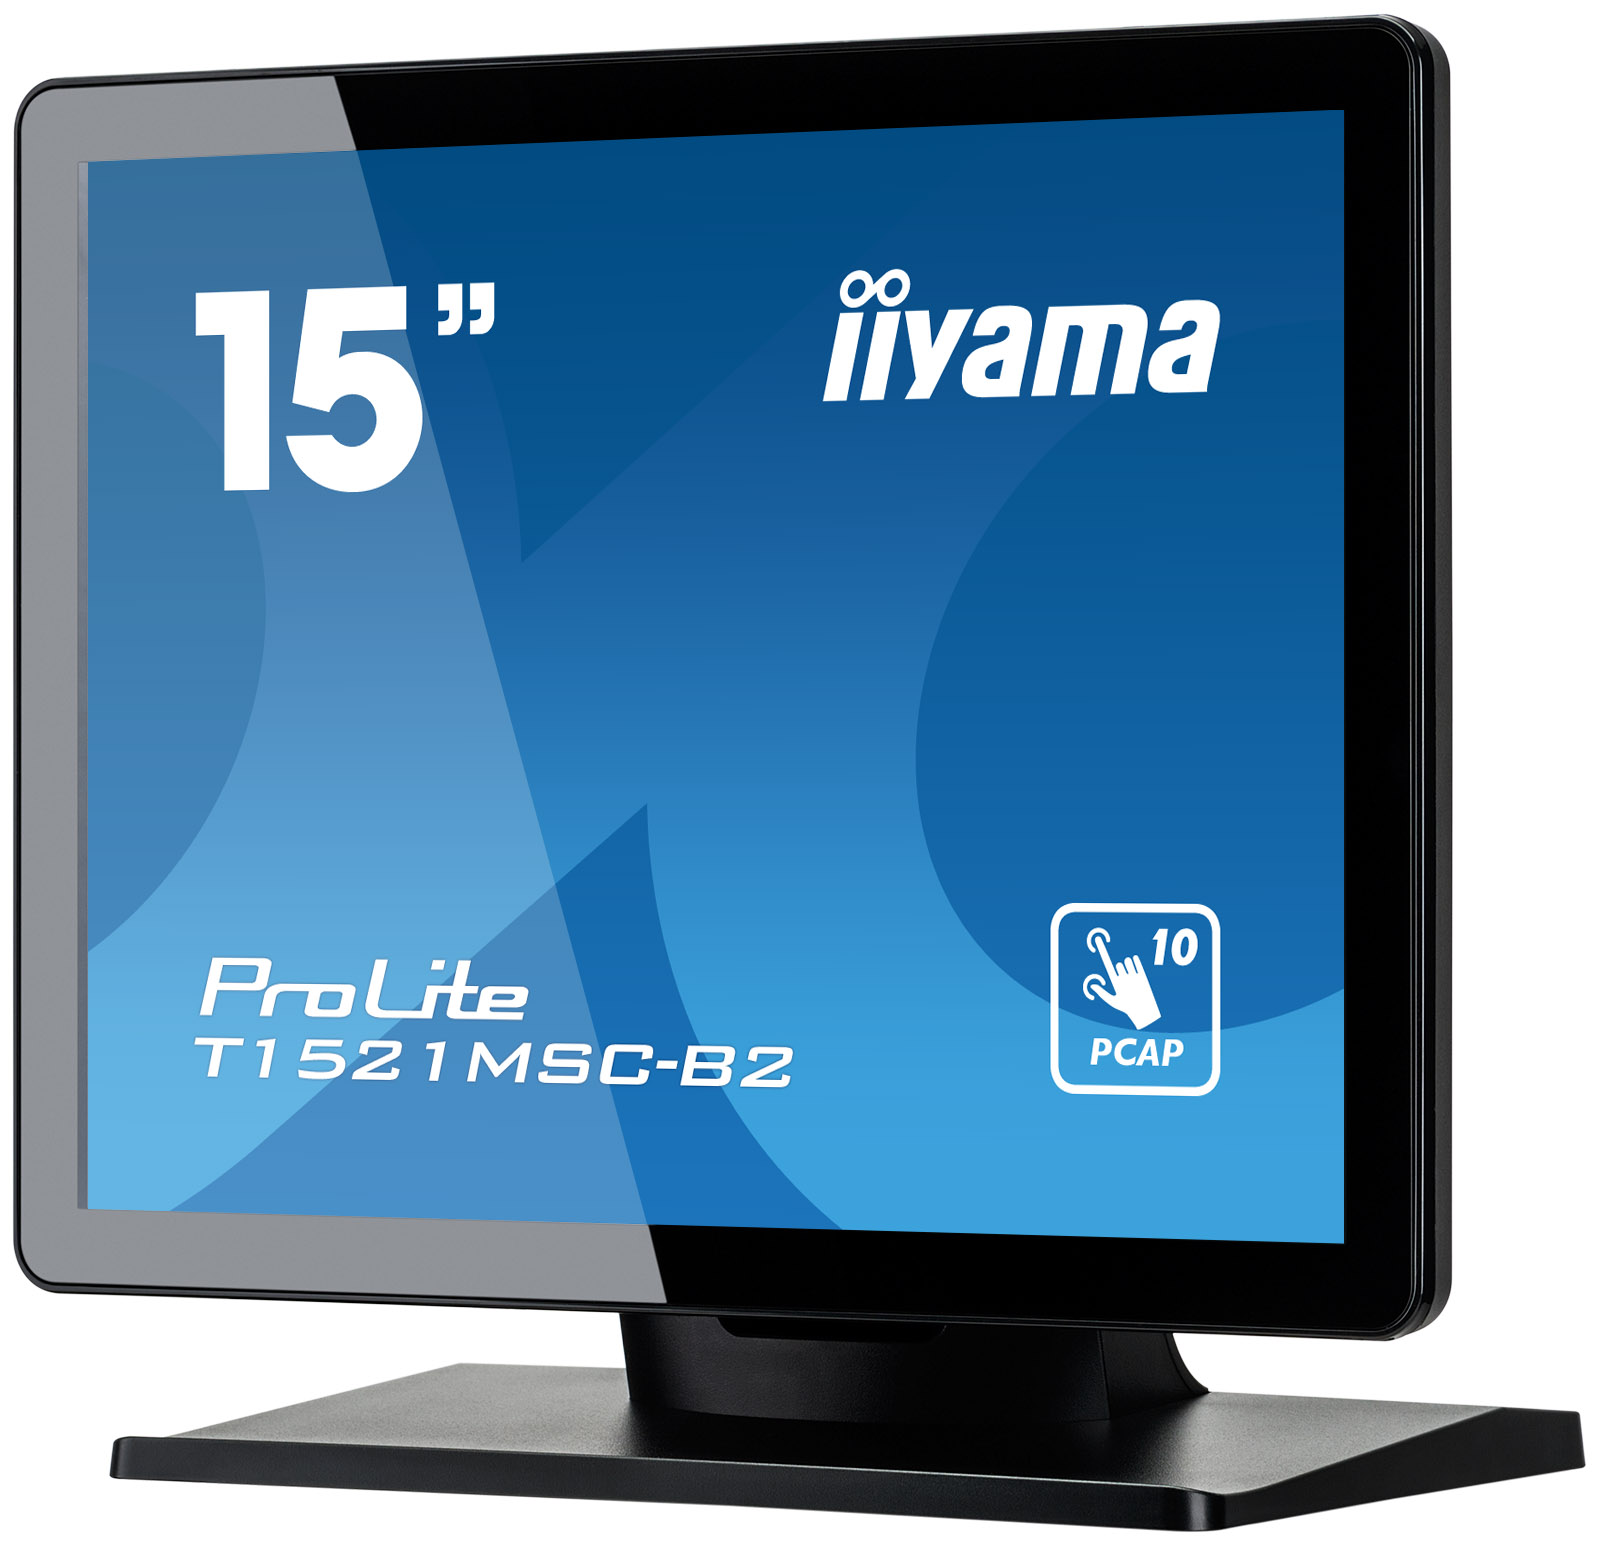 15" iiyama T1521MSC-B2: IPS, XGA, PCAP, HDMI 